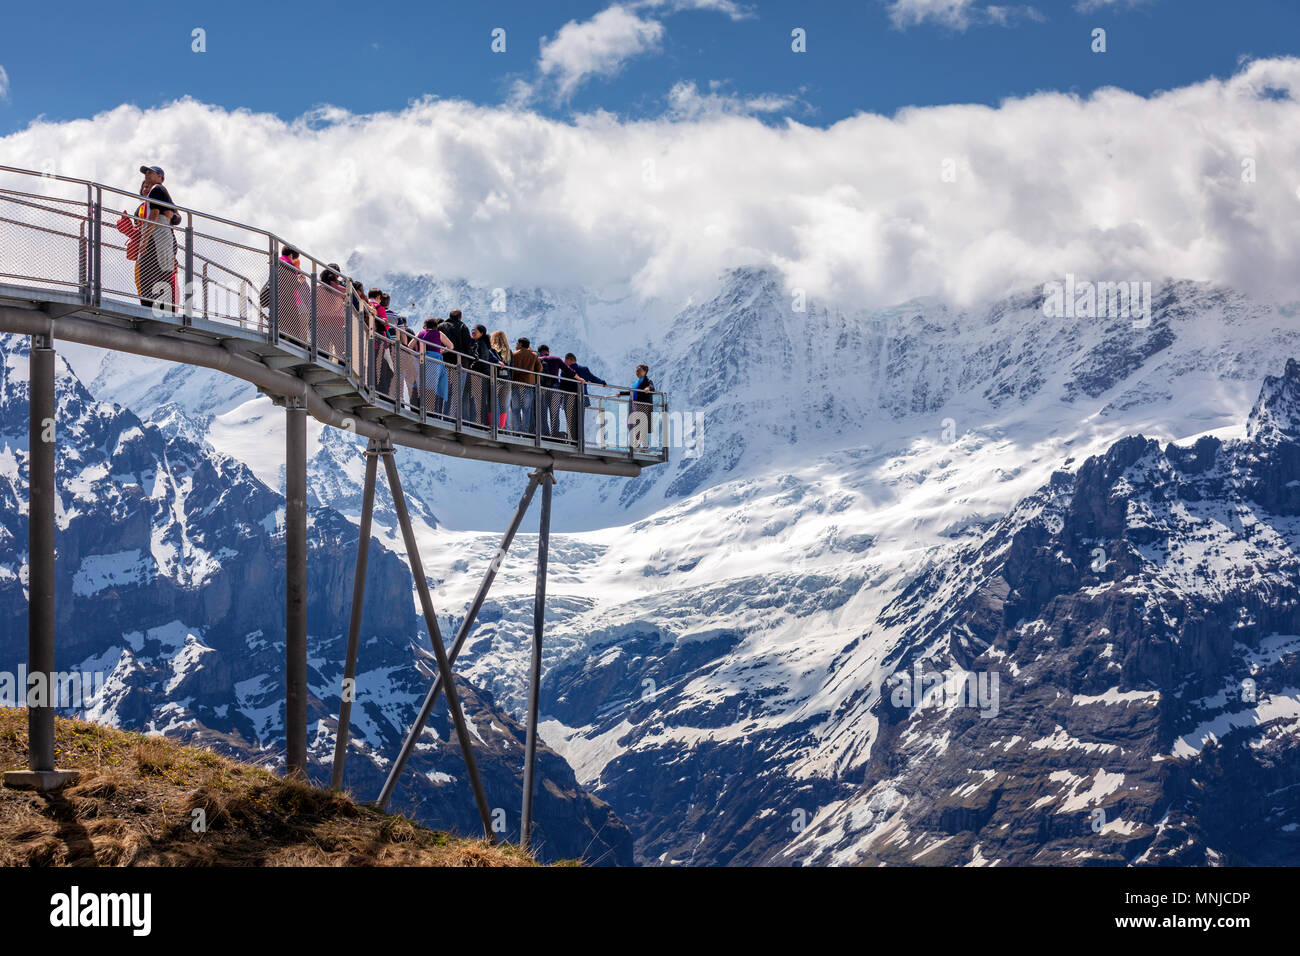 Le persone sulla piattaforma di osservazione nella parte superiore della prima montagna sopra Grindelwald, Oberland bernese, Svizzera Foto Stock